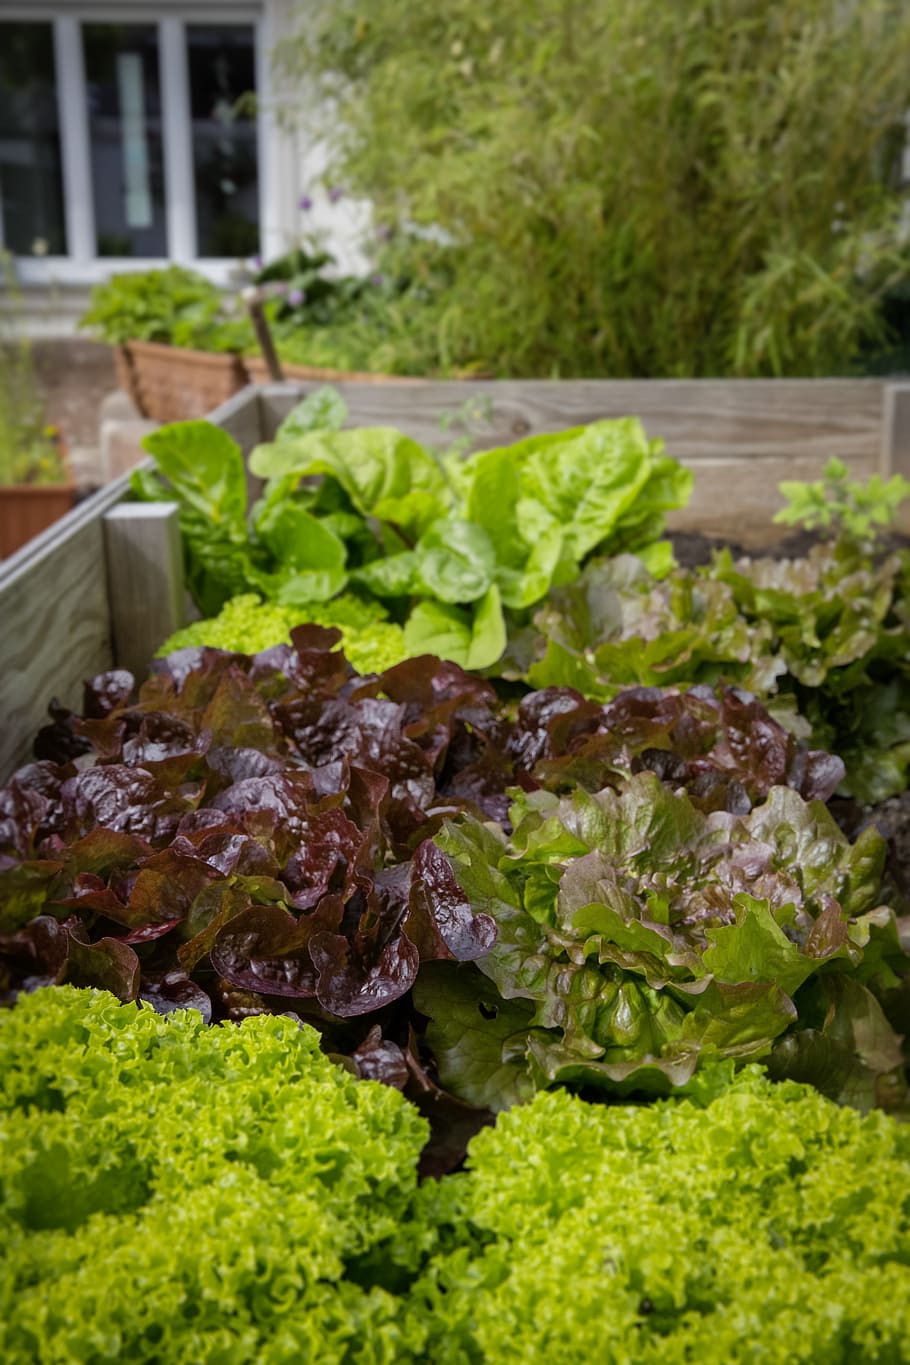 verde, morado, hojeado, plantas, jardinería urbana, locavore, regional, bio, saludable, ensalada